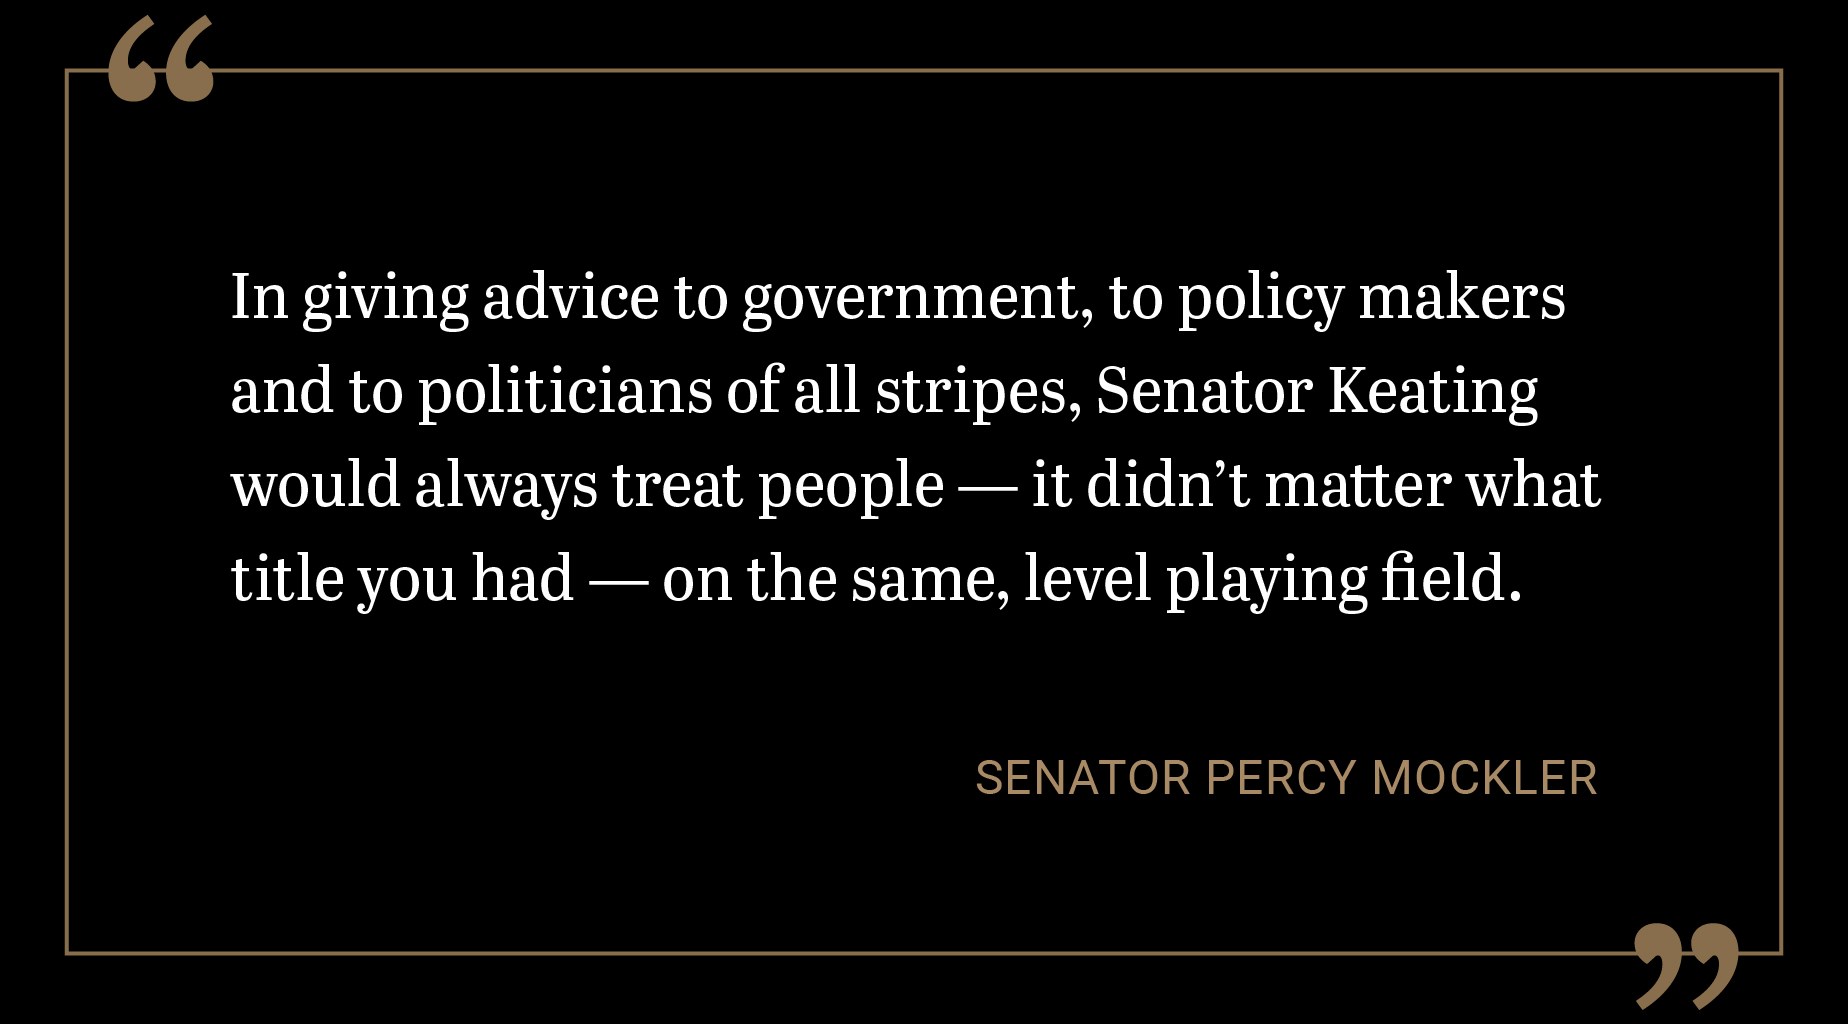 Dans le cadre de son travail de conseillère auprès du gouvernement, des décideurs politiques et des politiciens de toutes allégeances, la sénatrice Keating traitait tout le monde sur un pied d’égalité, quel que soit le titre de son interlocuteur.